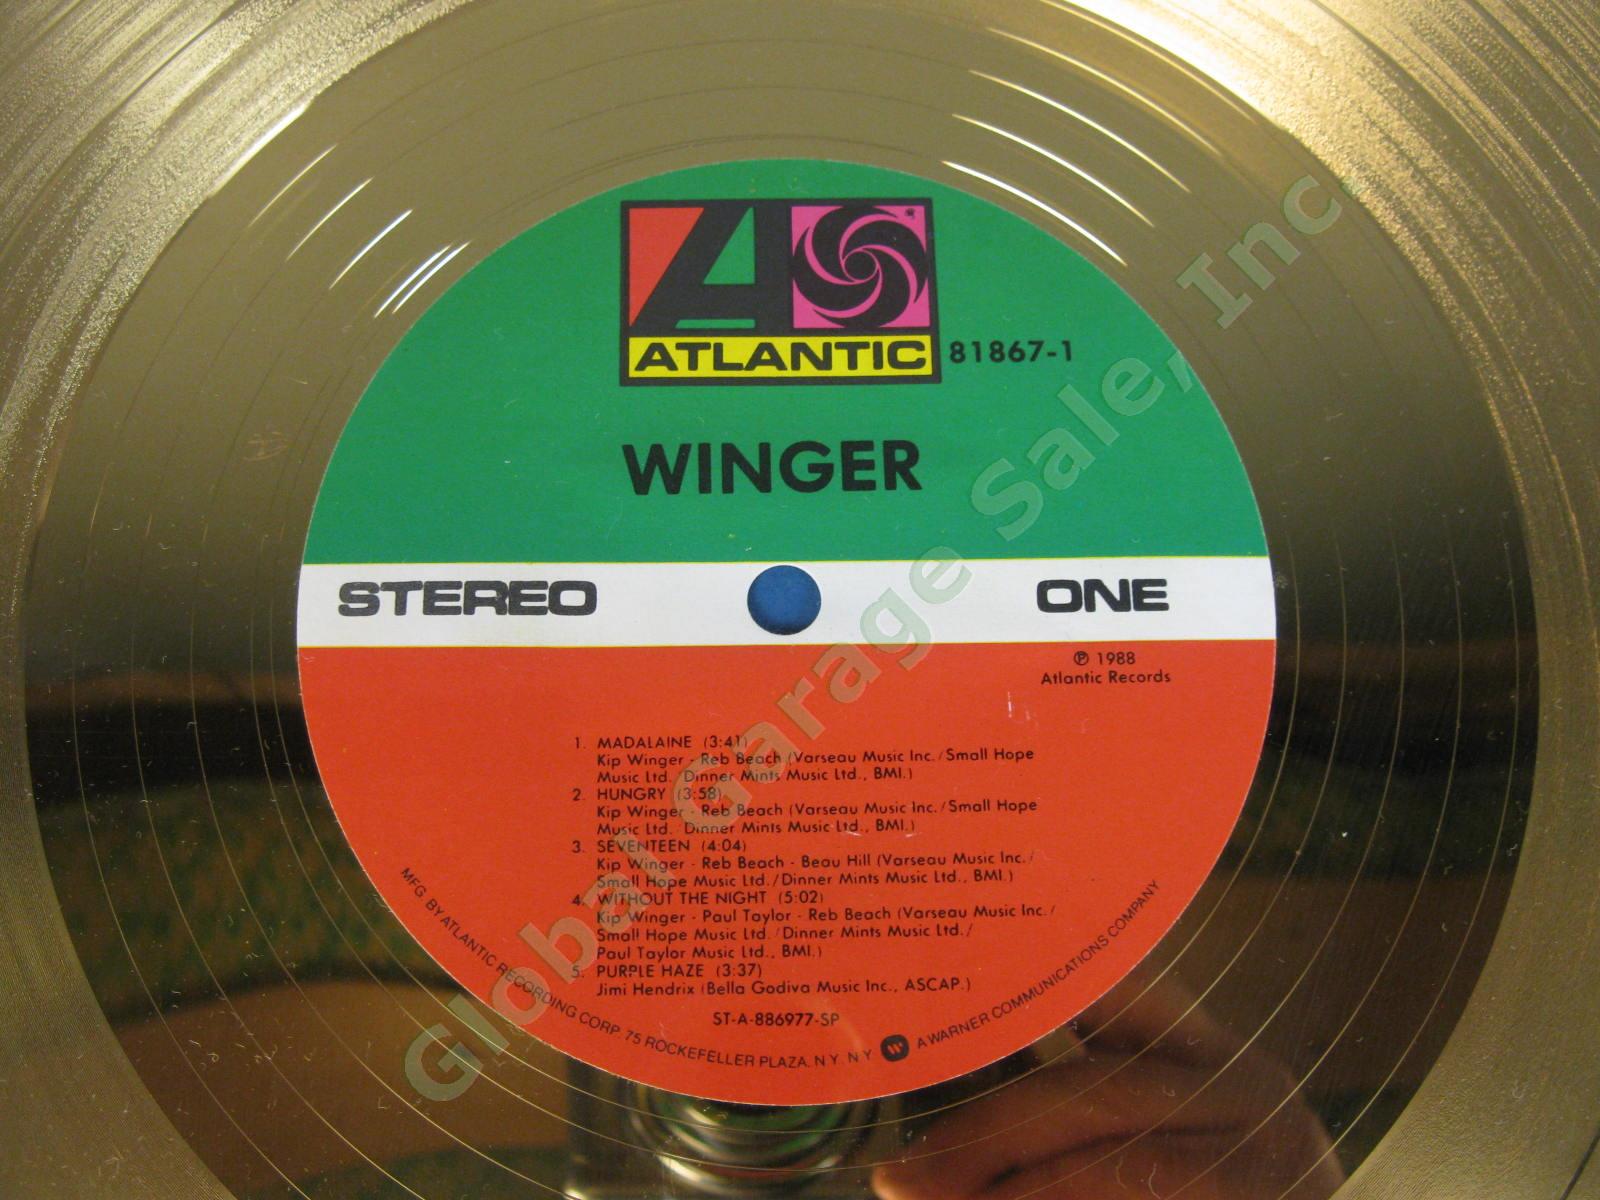 1989 RIAA Gold Atlantic Record Sales Award Kip Winger Debut Album 1988 Madalaine 2